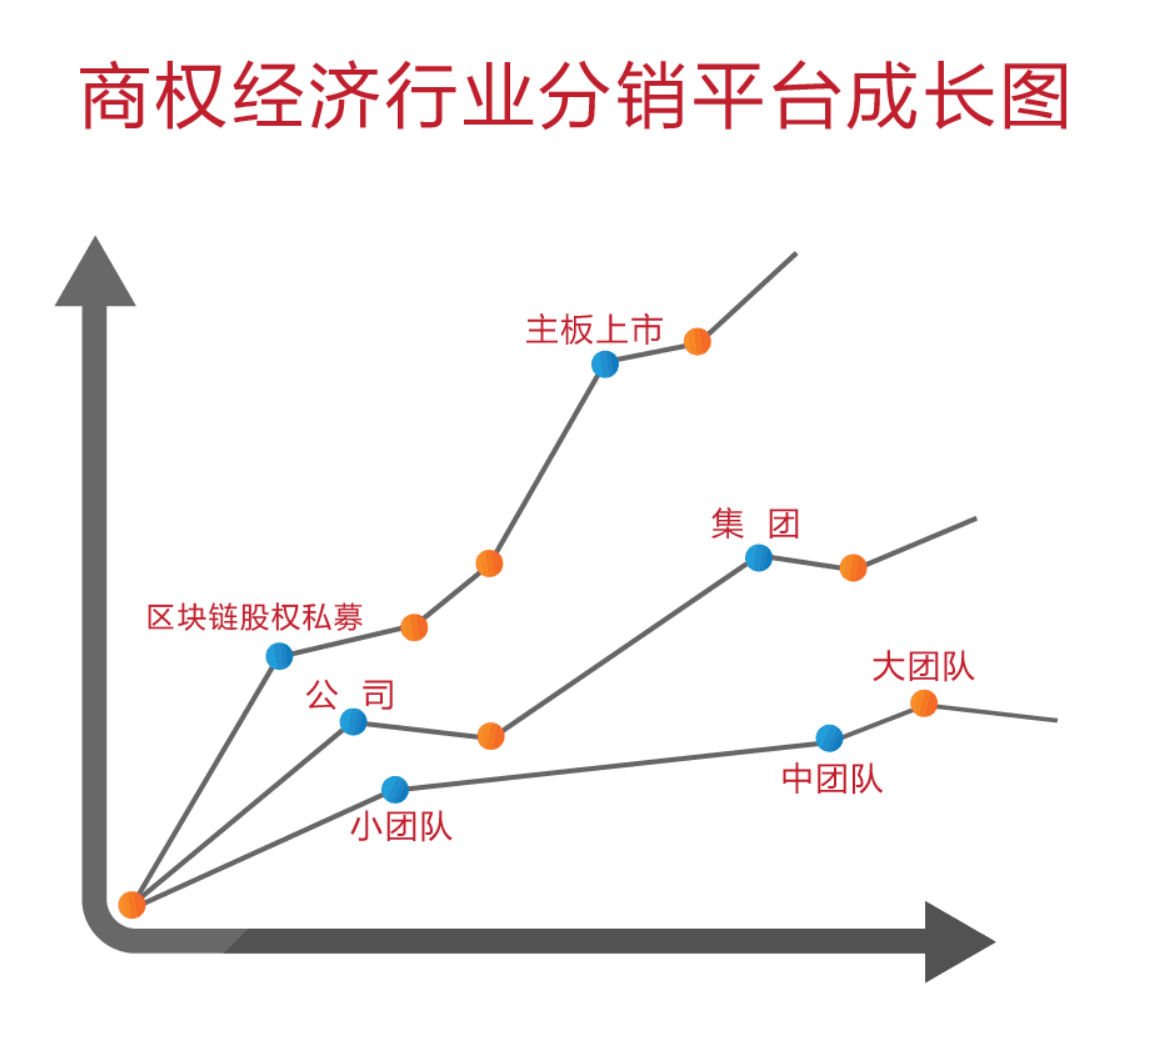 商权经济行业分销平台成长图.png